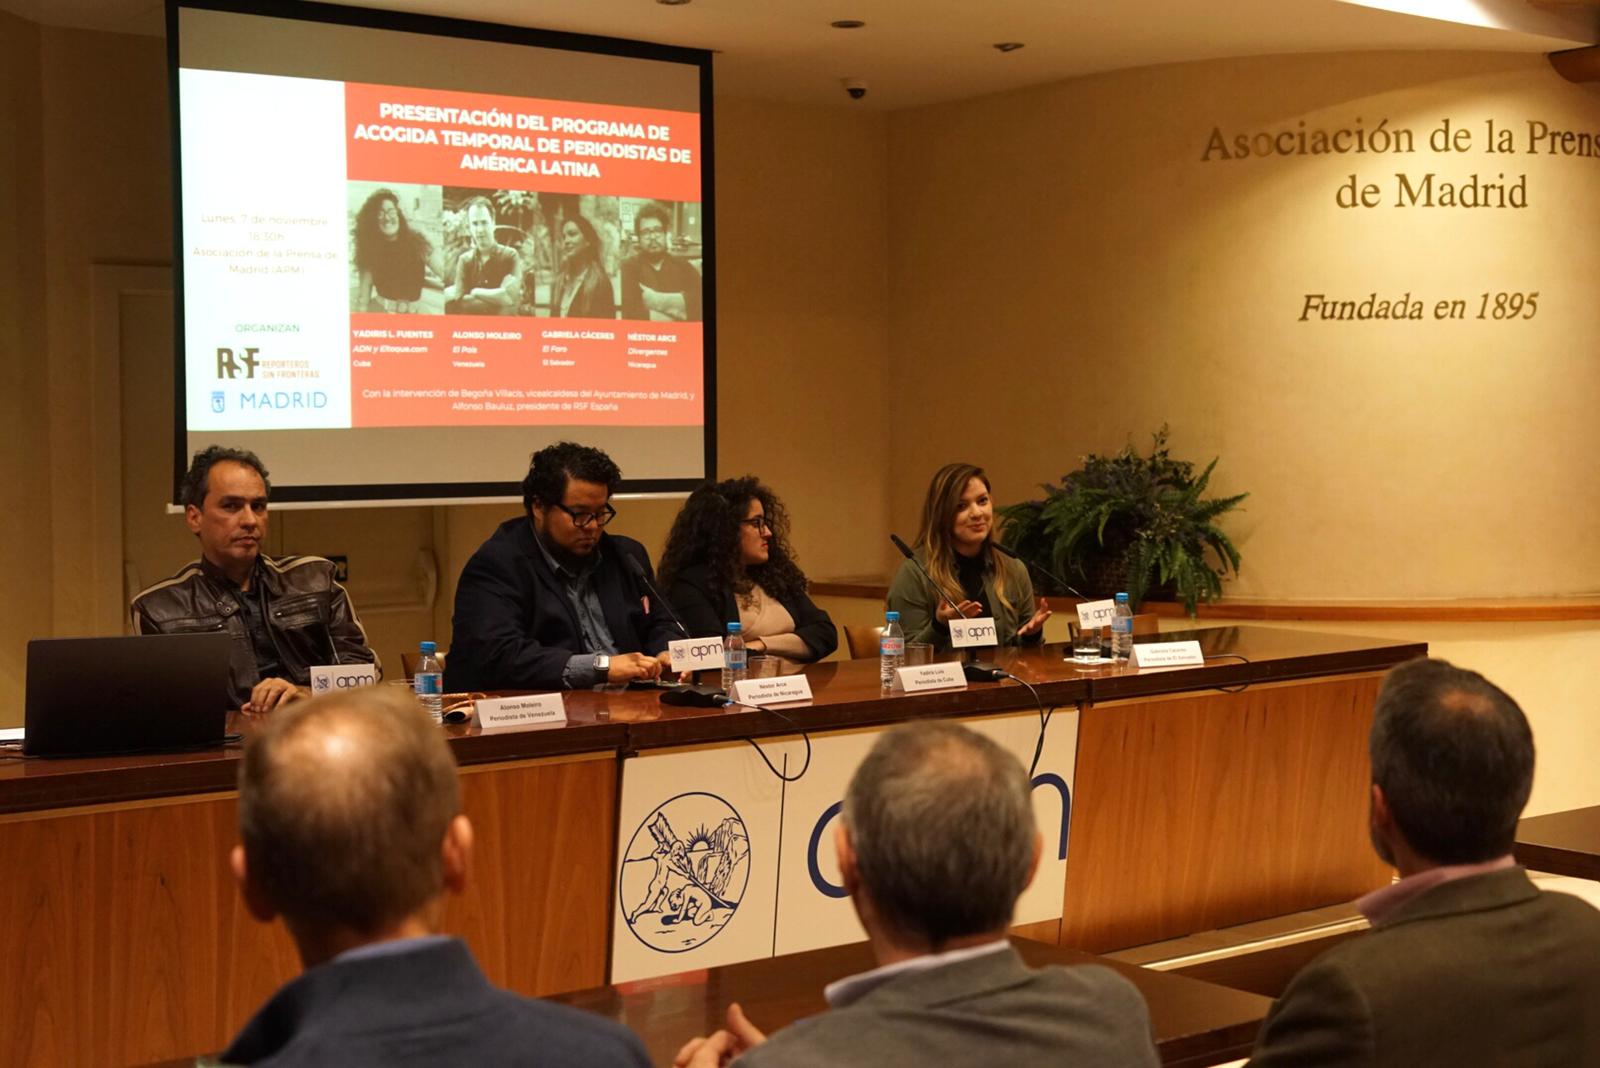 PROGRAMA DE ACOGIDA | Presentación del V Programa de Acogida Temporal de Periodistas Latinoamericanos de RSF y el Ayuntamiento de Madrid